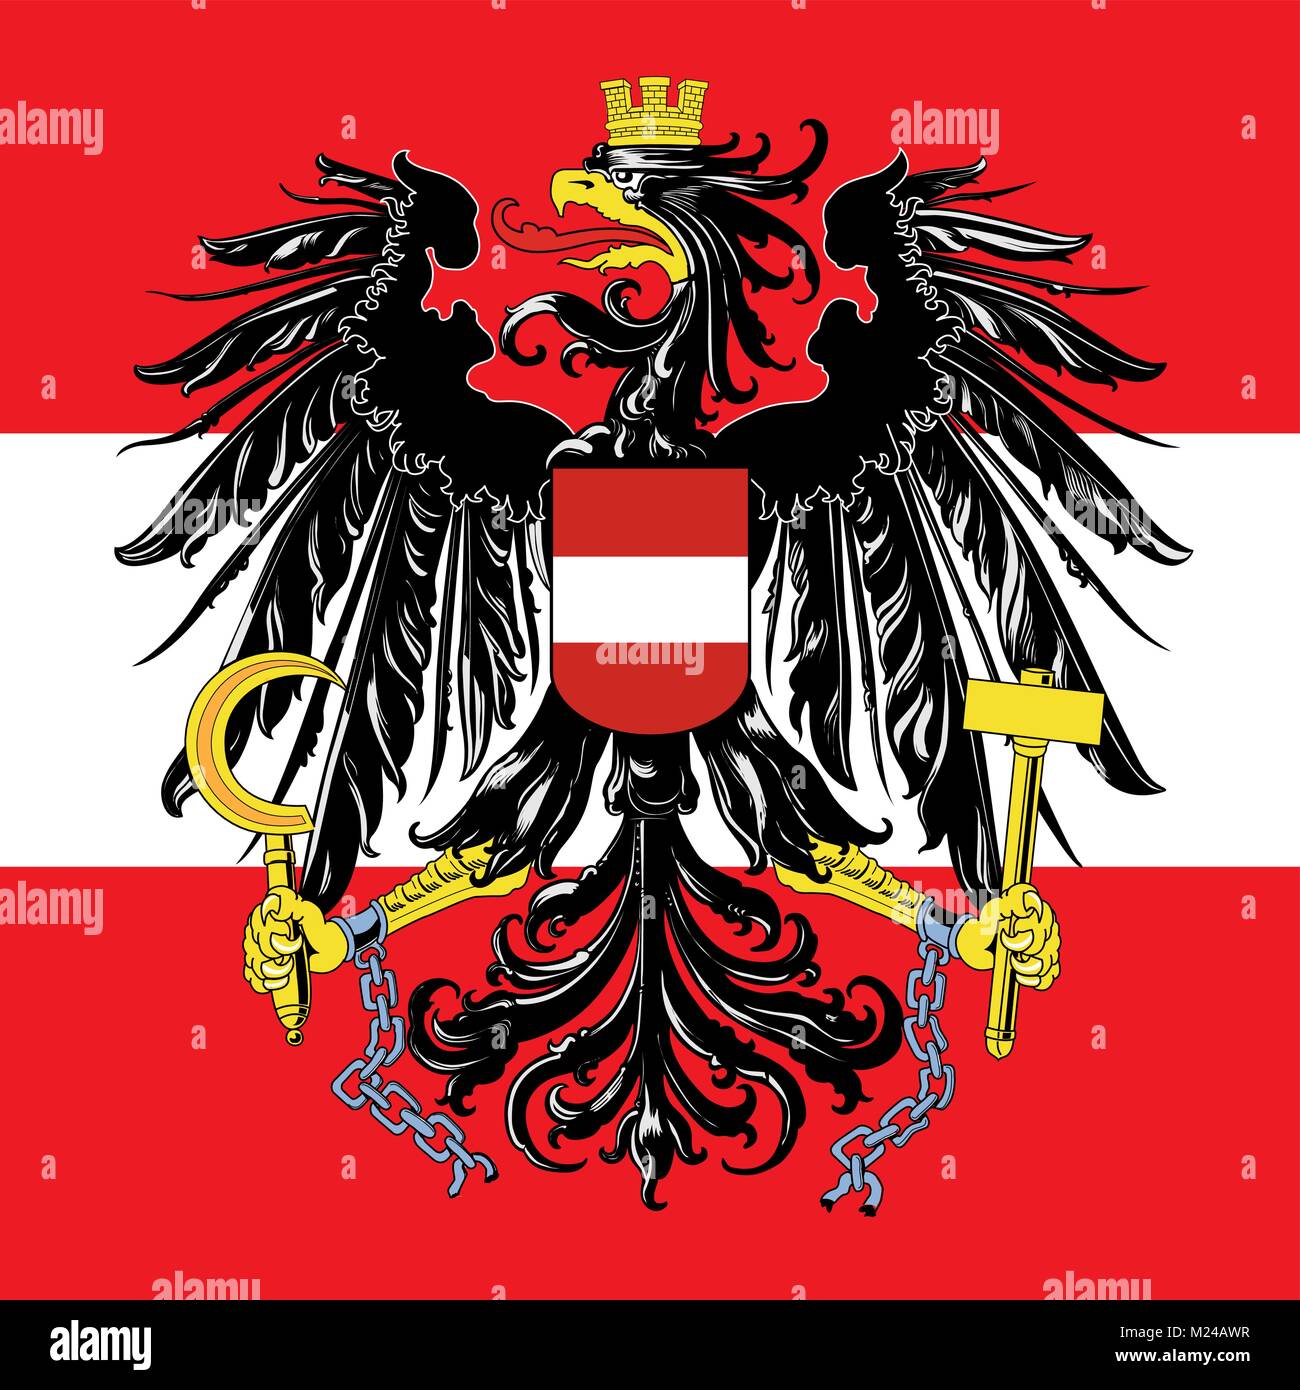 Österreich Wappen und Flagge, offiziellen Symbole der Nation  Stock-Vektorgrafik - Alamy